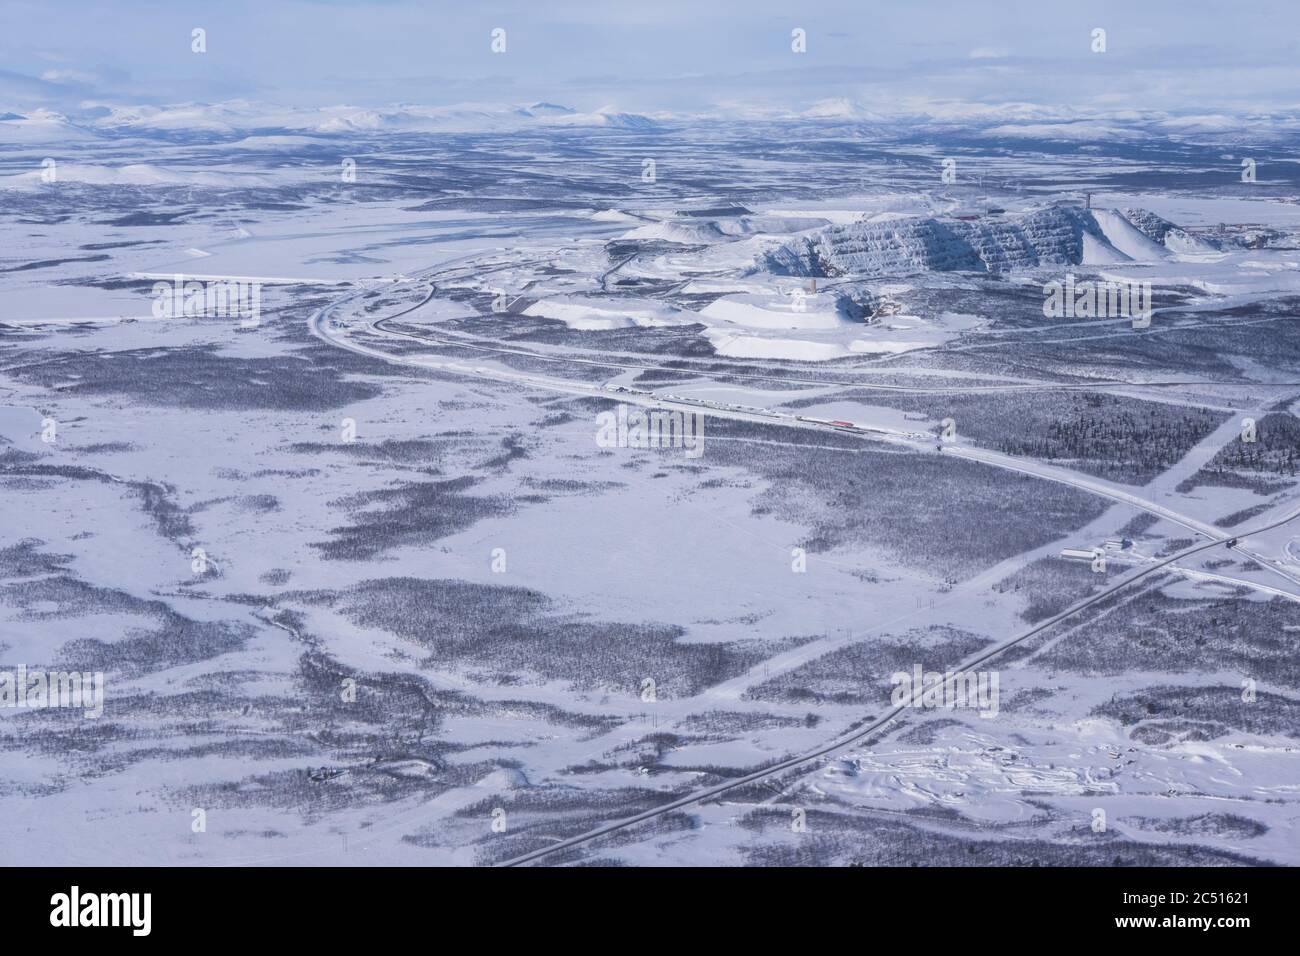 Foto aerea della zona di Kiruna con una strada in Lapponia in Svezia in inverno. In alto a destra le fabbriche della LKAB, una grande società mineraria svedese Foto Stock